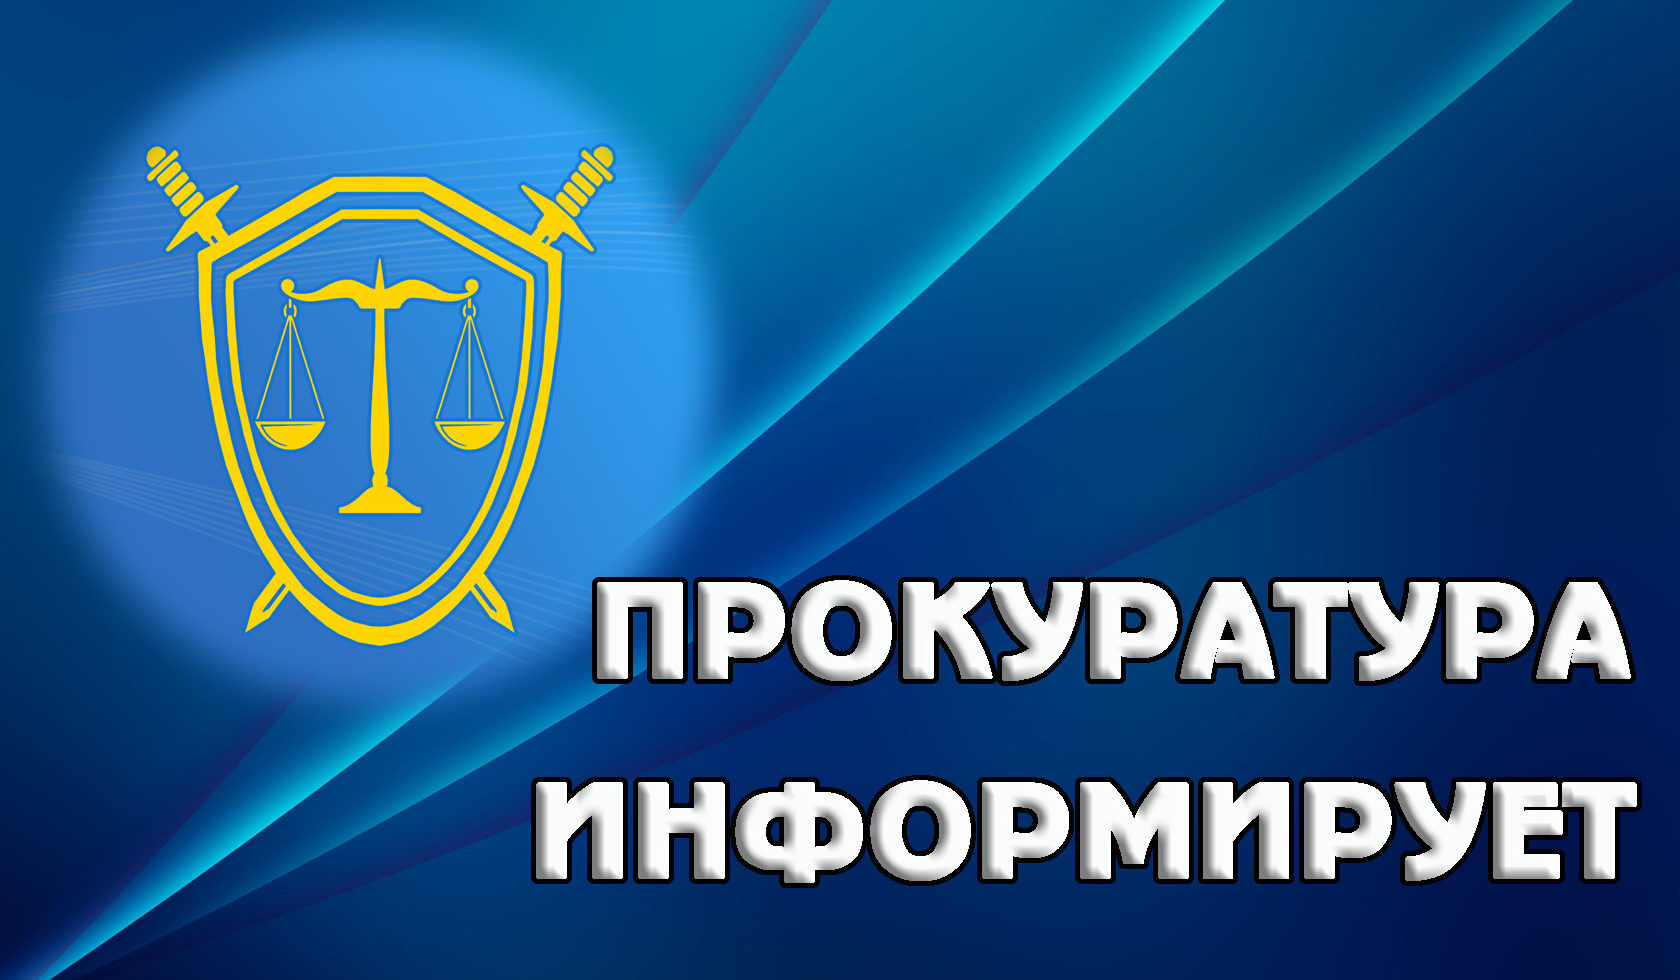 Прокуратура Засвияжского района г. Ульяновска информирует  об изменениях миграционного законодательства.